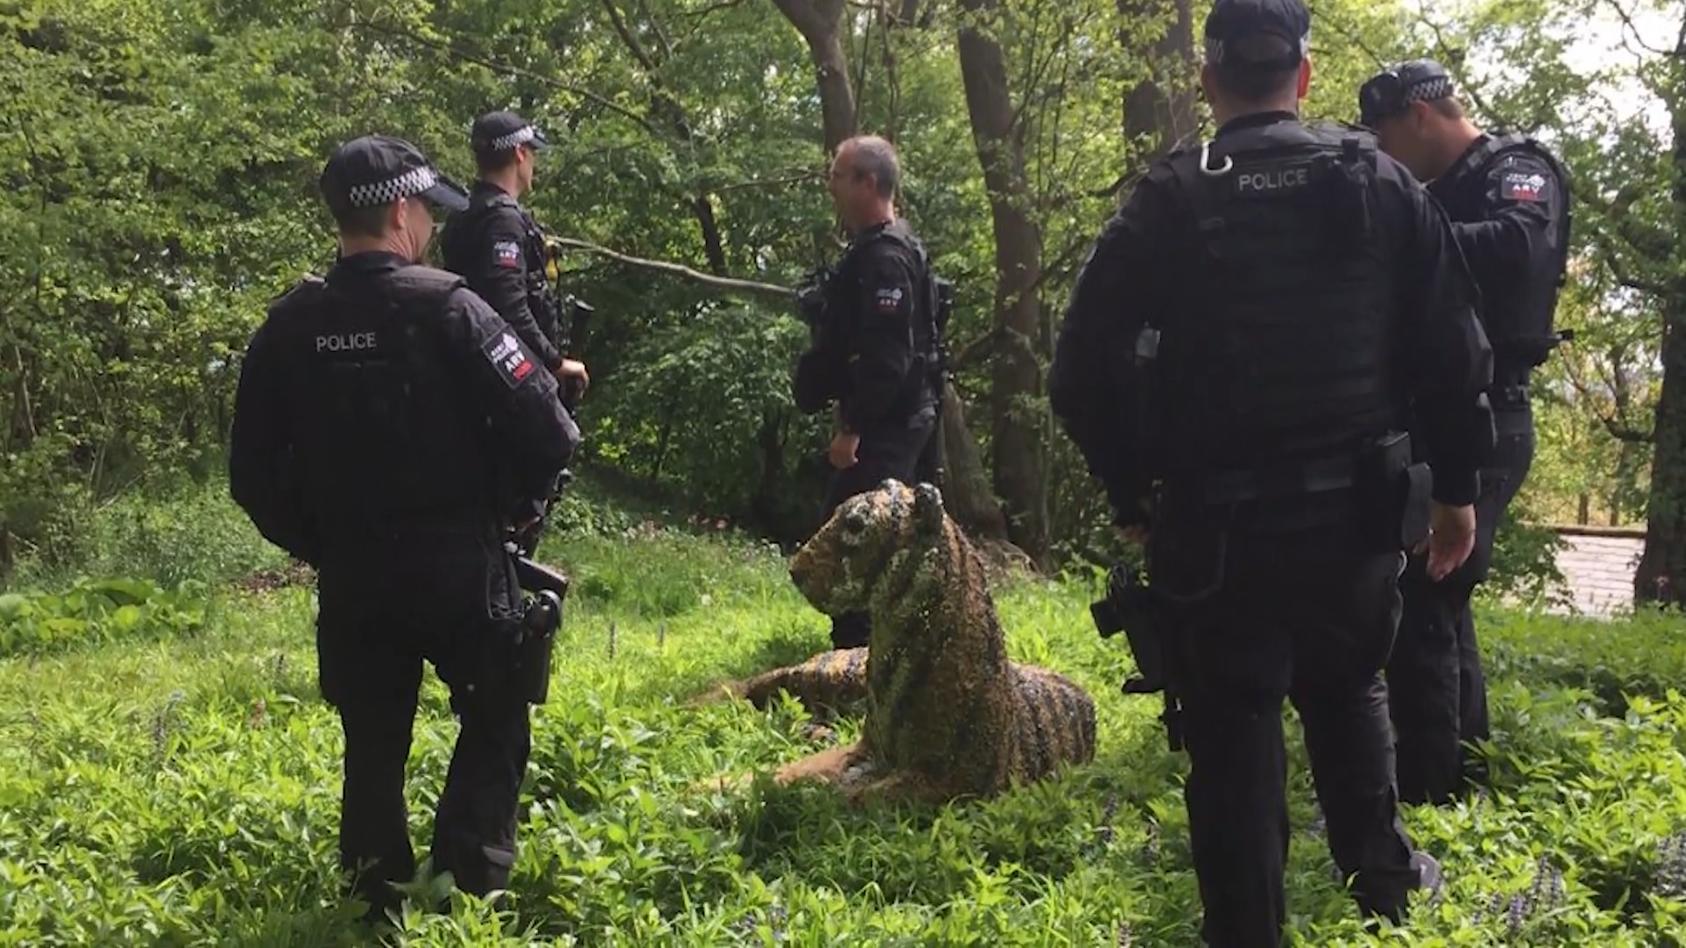 Tiger-Skulptur für echt gehalten Kurioser Polizeieinsatz in England